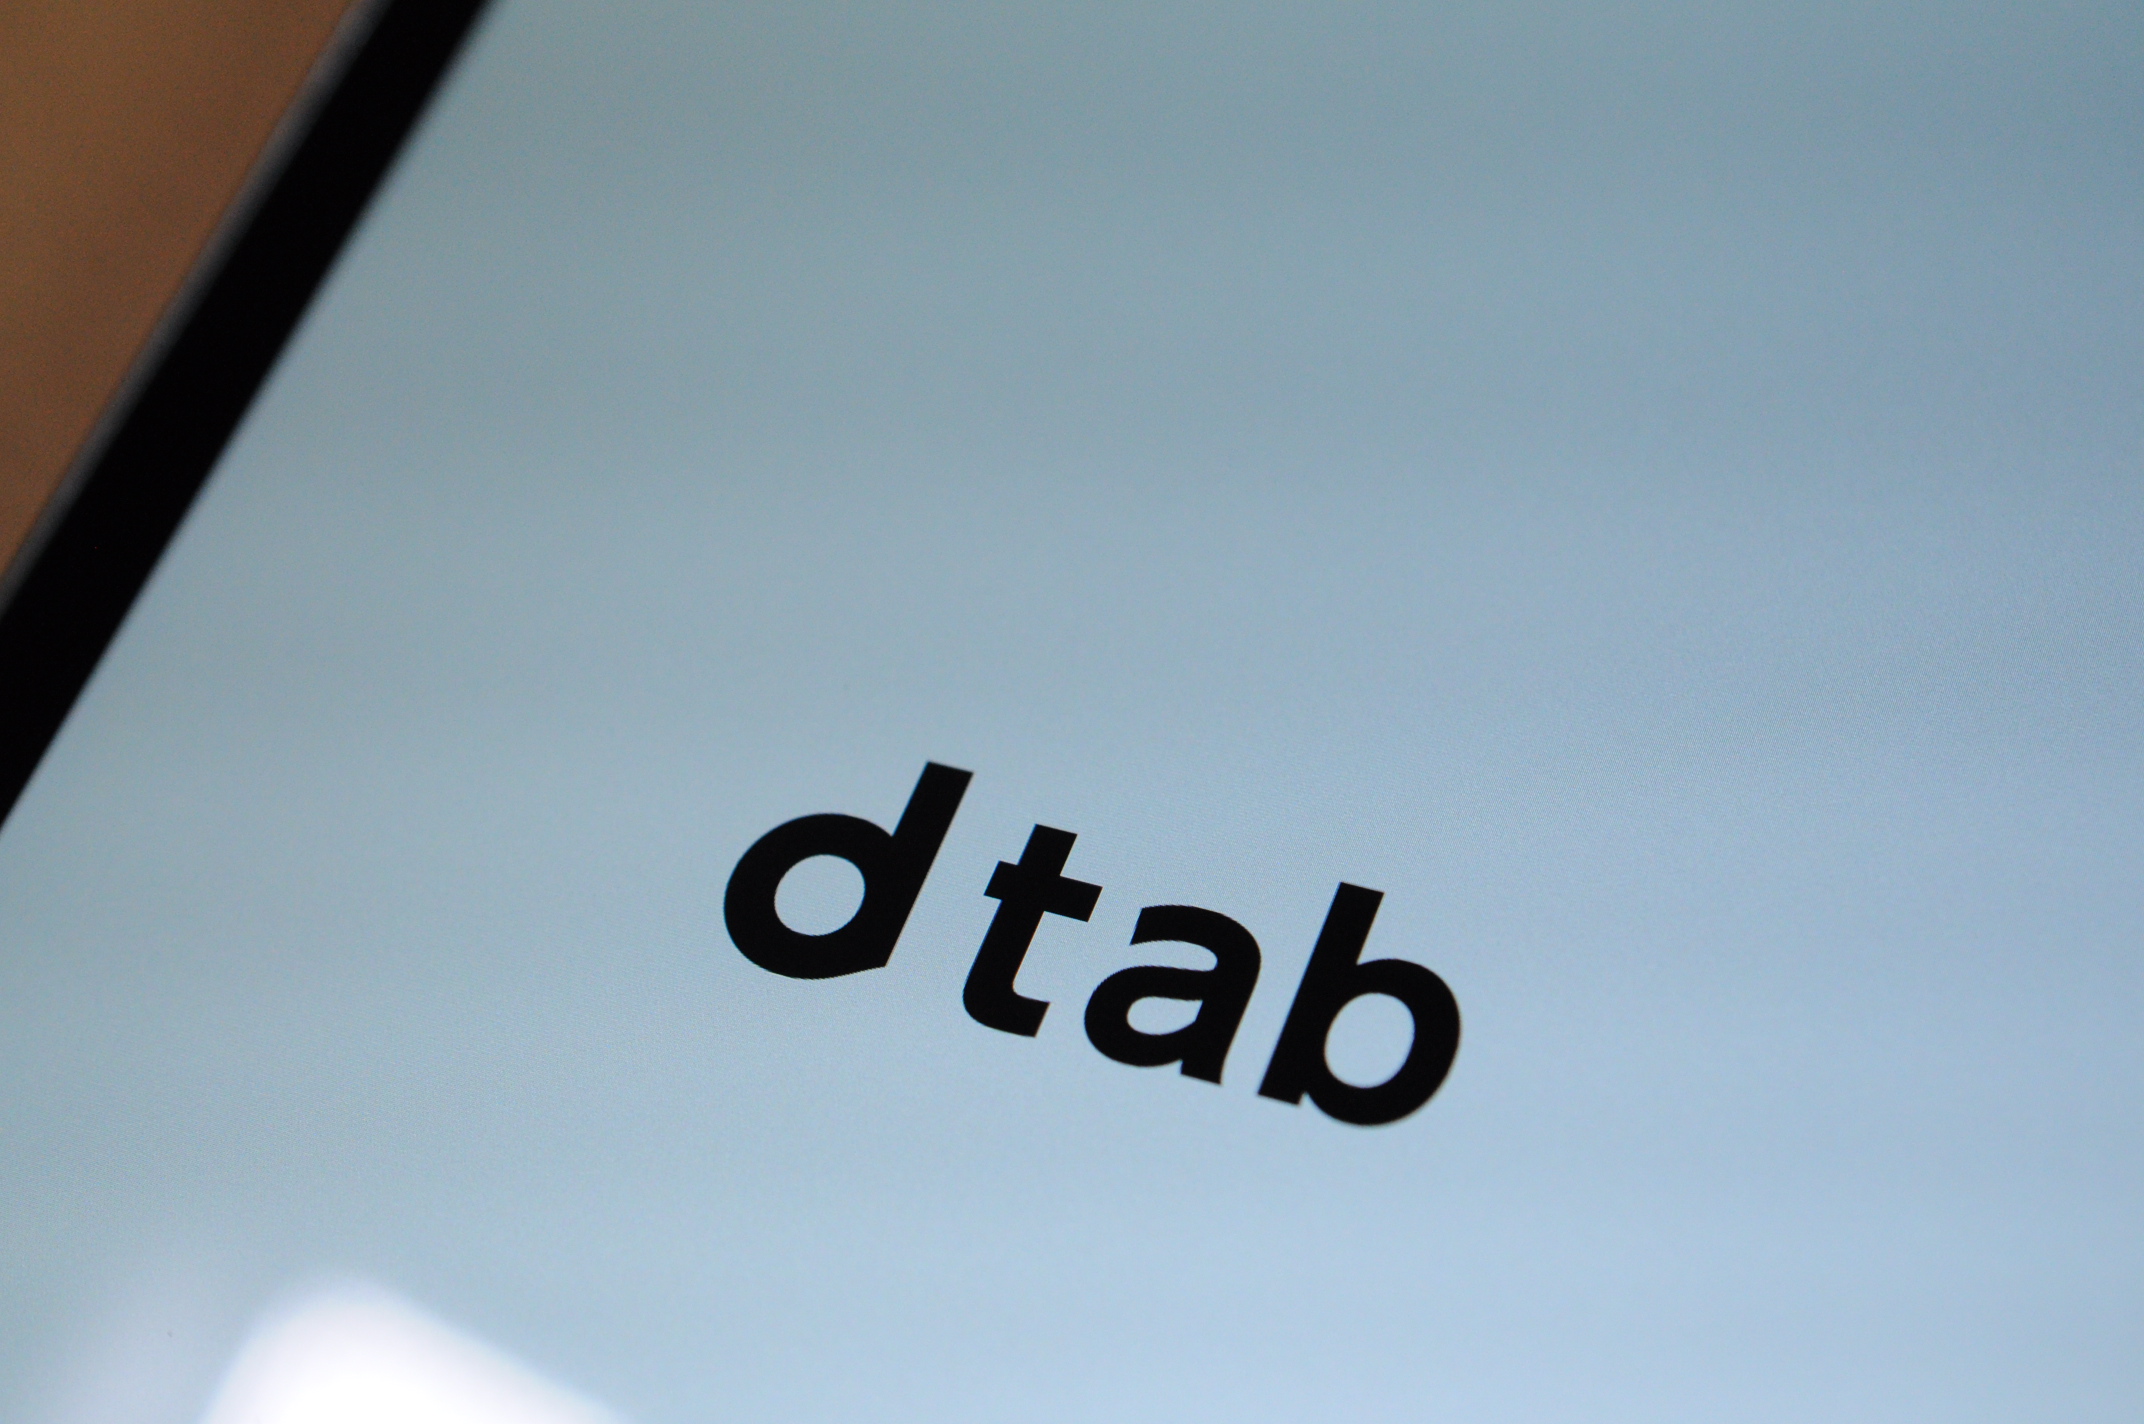 8インチタブレット Dtab Compact D 02hを白ロムで購入 コスパ高過ぎで涙出る モノ好き ブログ